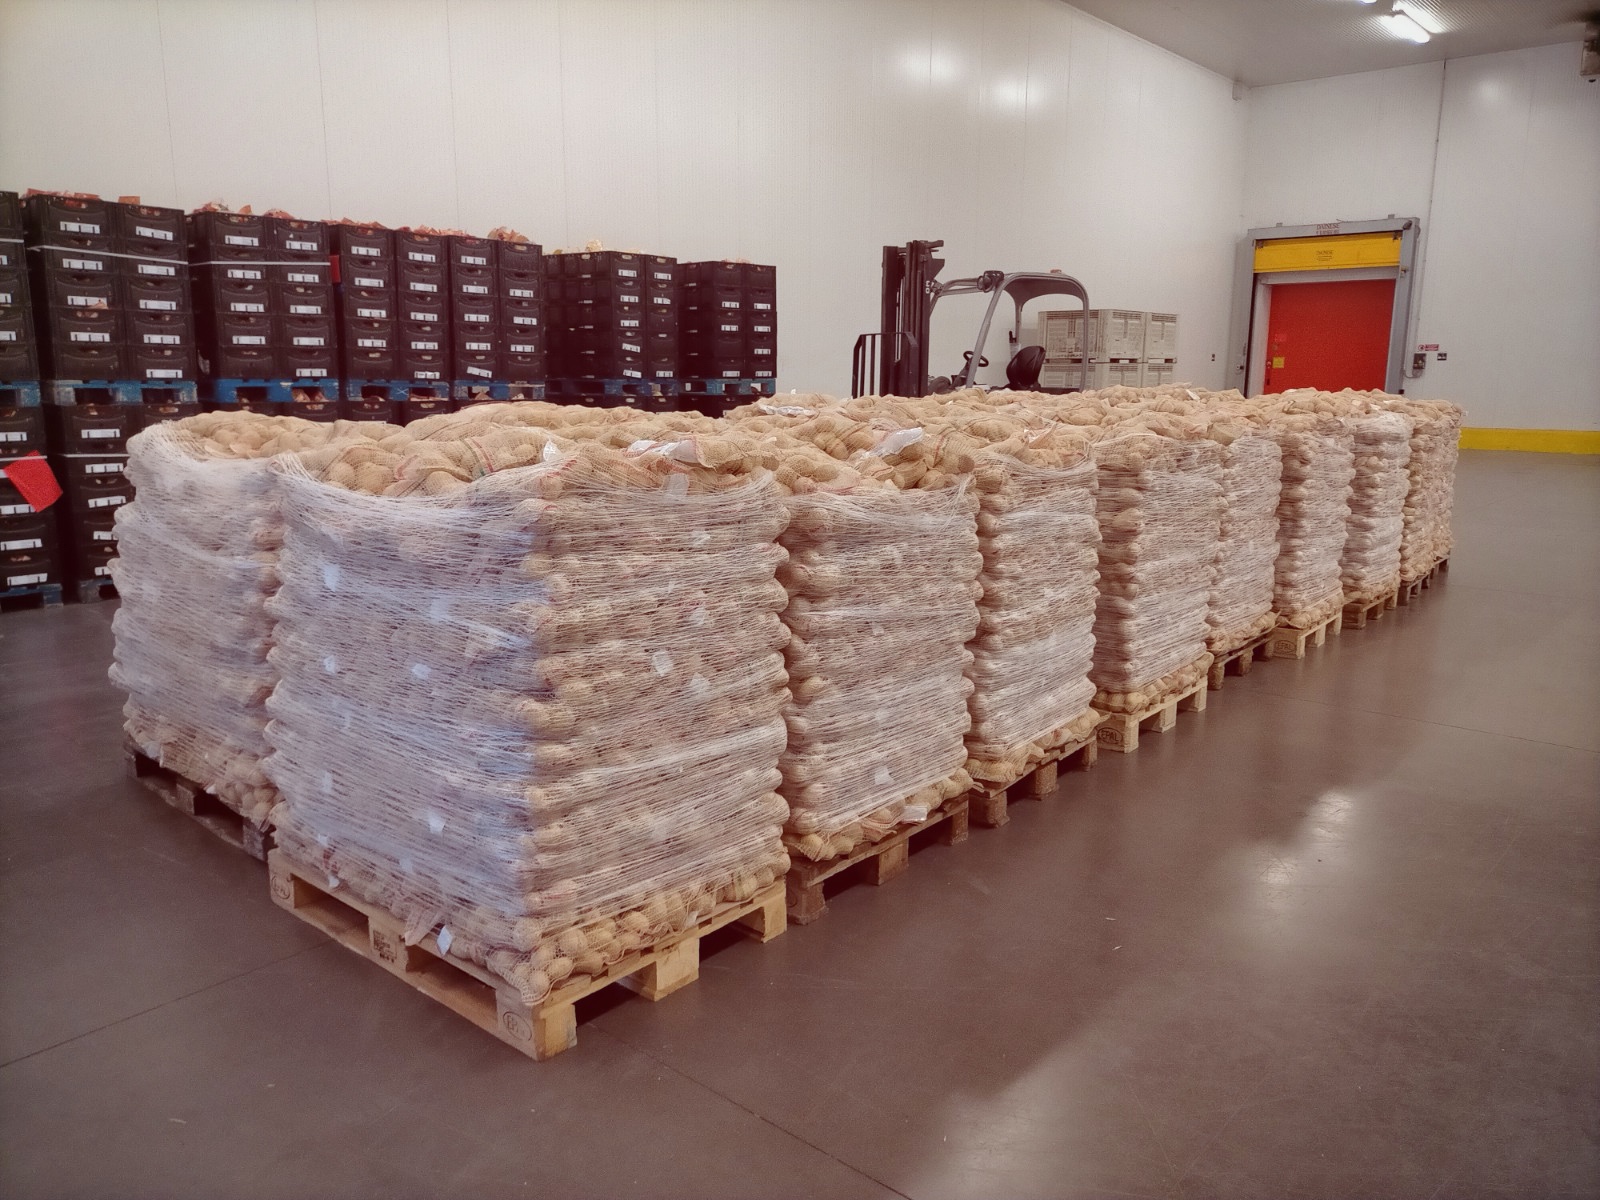 Solidarietà: Romagnoli F.lli Spa dona 50 tonnellate di patate a Banco Alimentare Emilia-Romagna